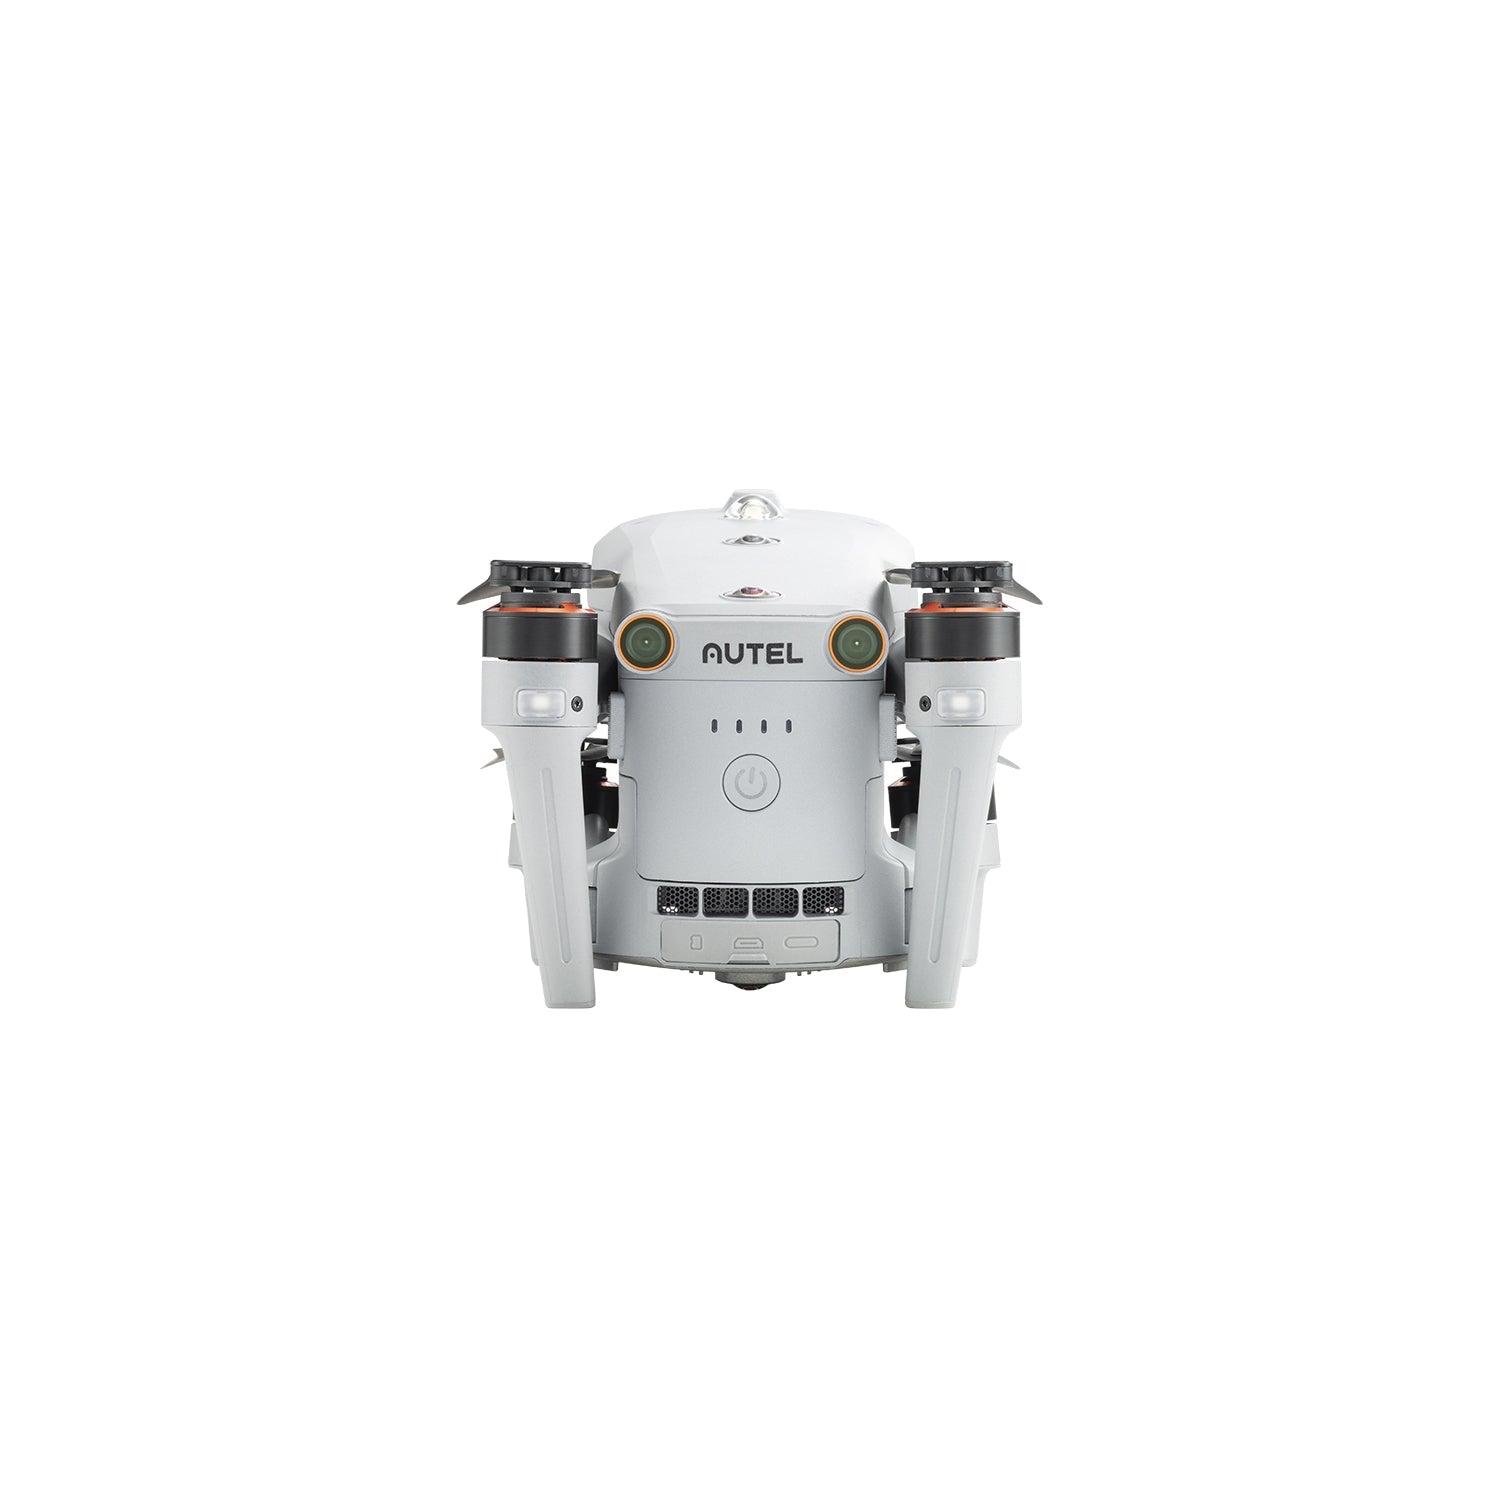 Autel Robotics EVO Max 4T 8K Drone